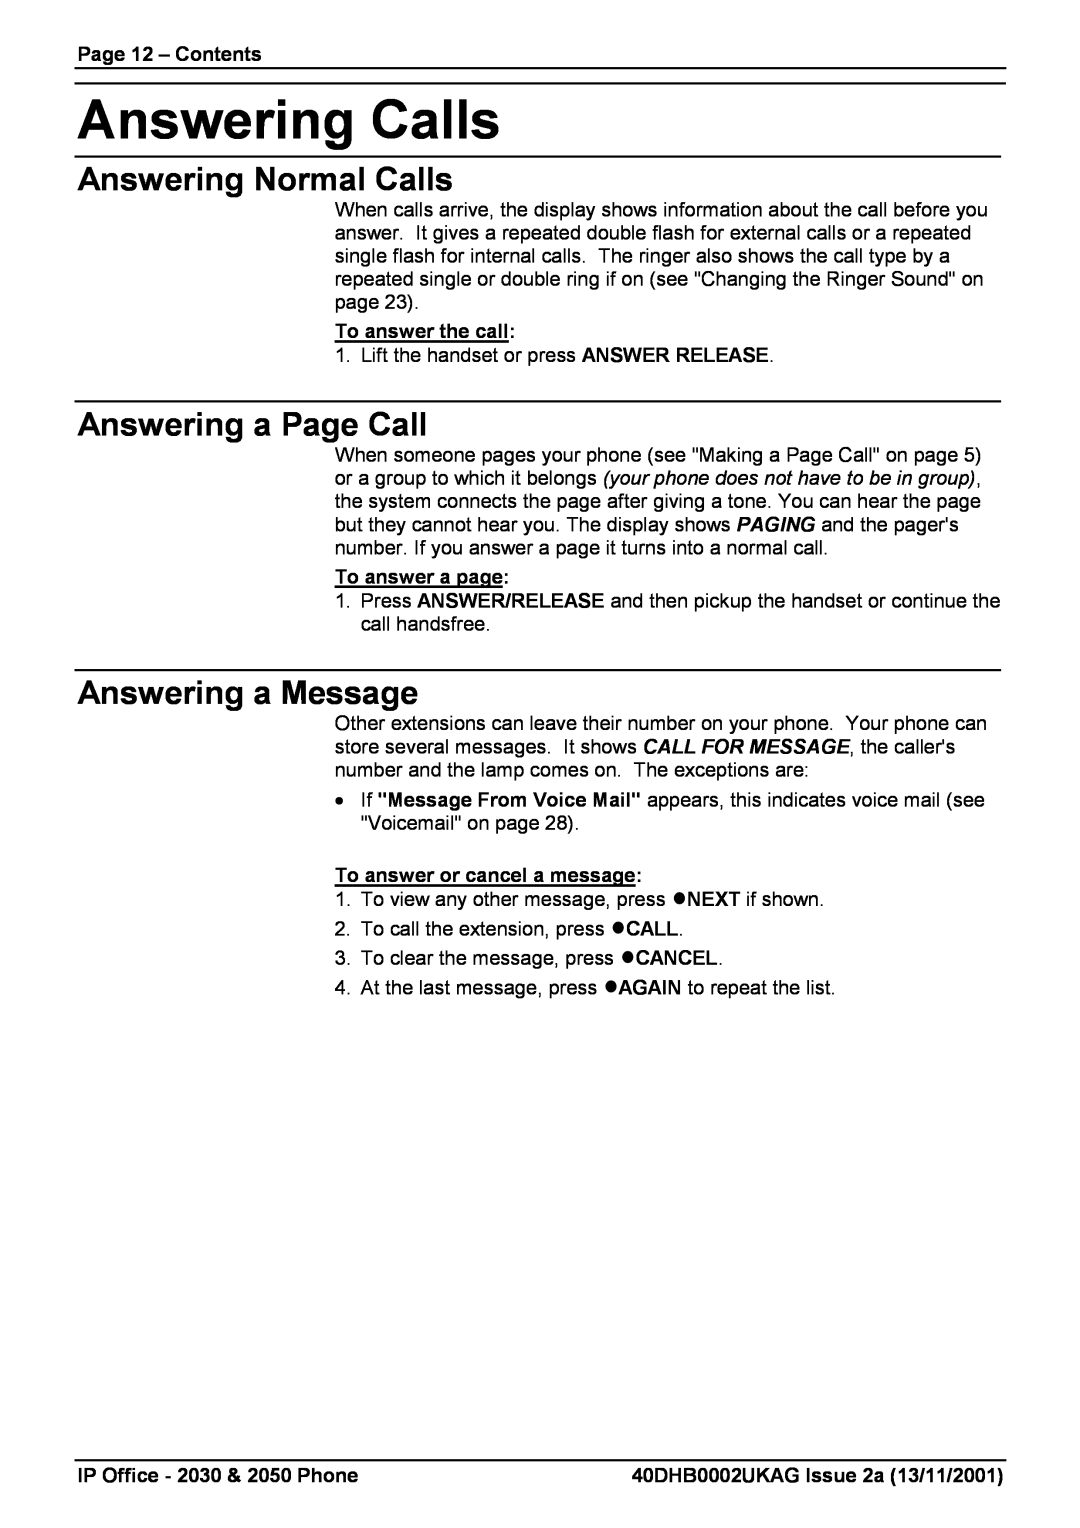 Avaya 2050, 2030 Answering Calls, Answering Normal Calls, Answering a Page Call, Answering a Message, Page 12 - Contents 